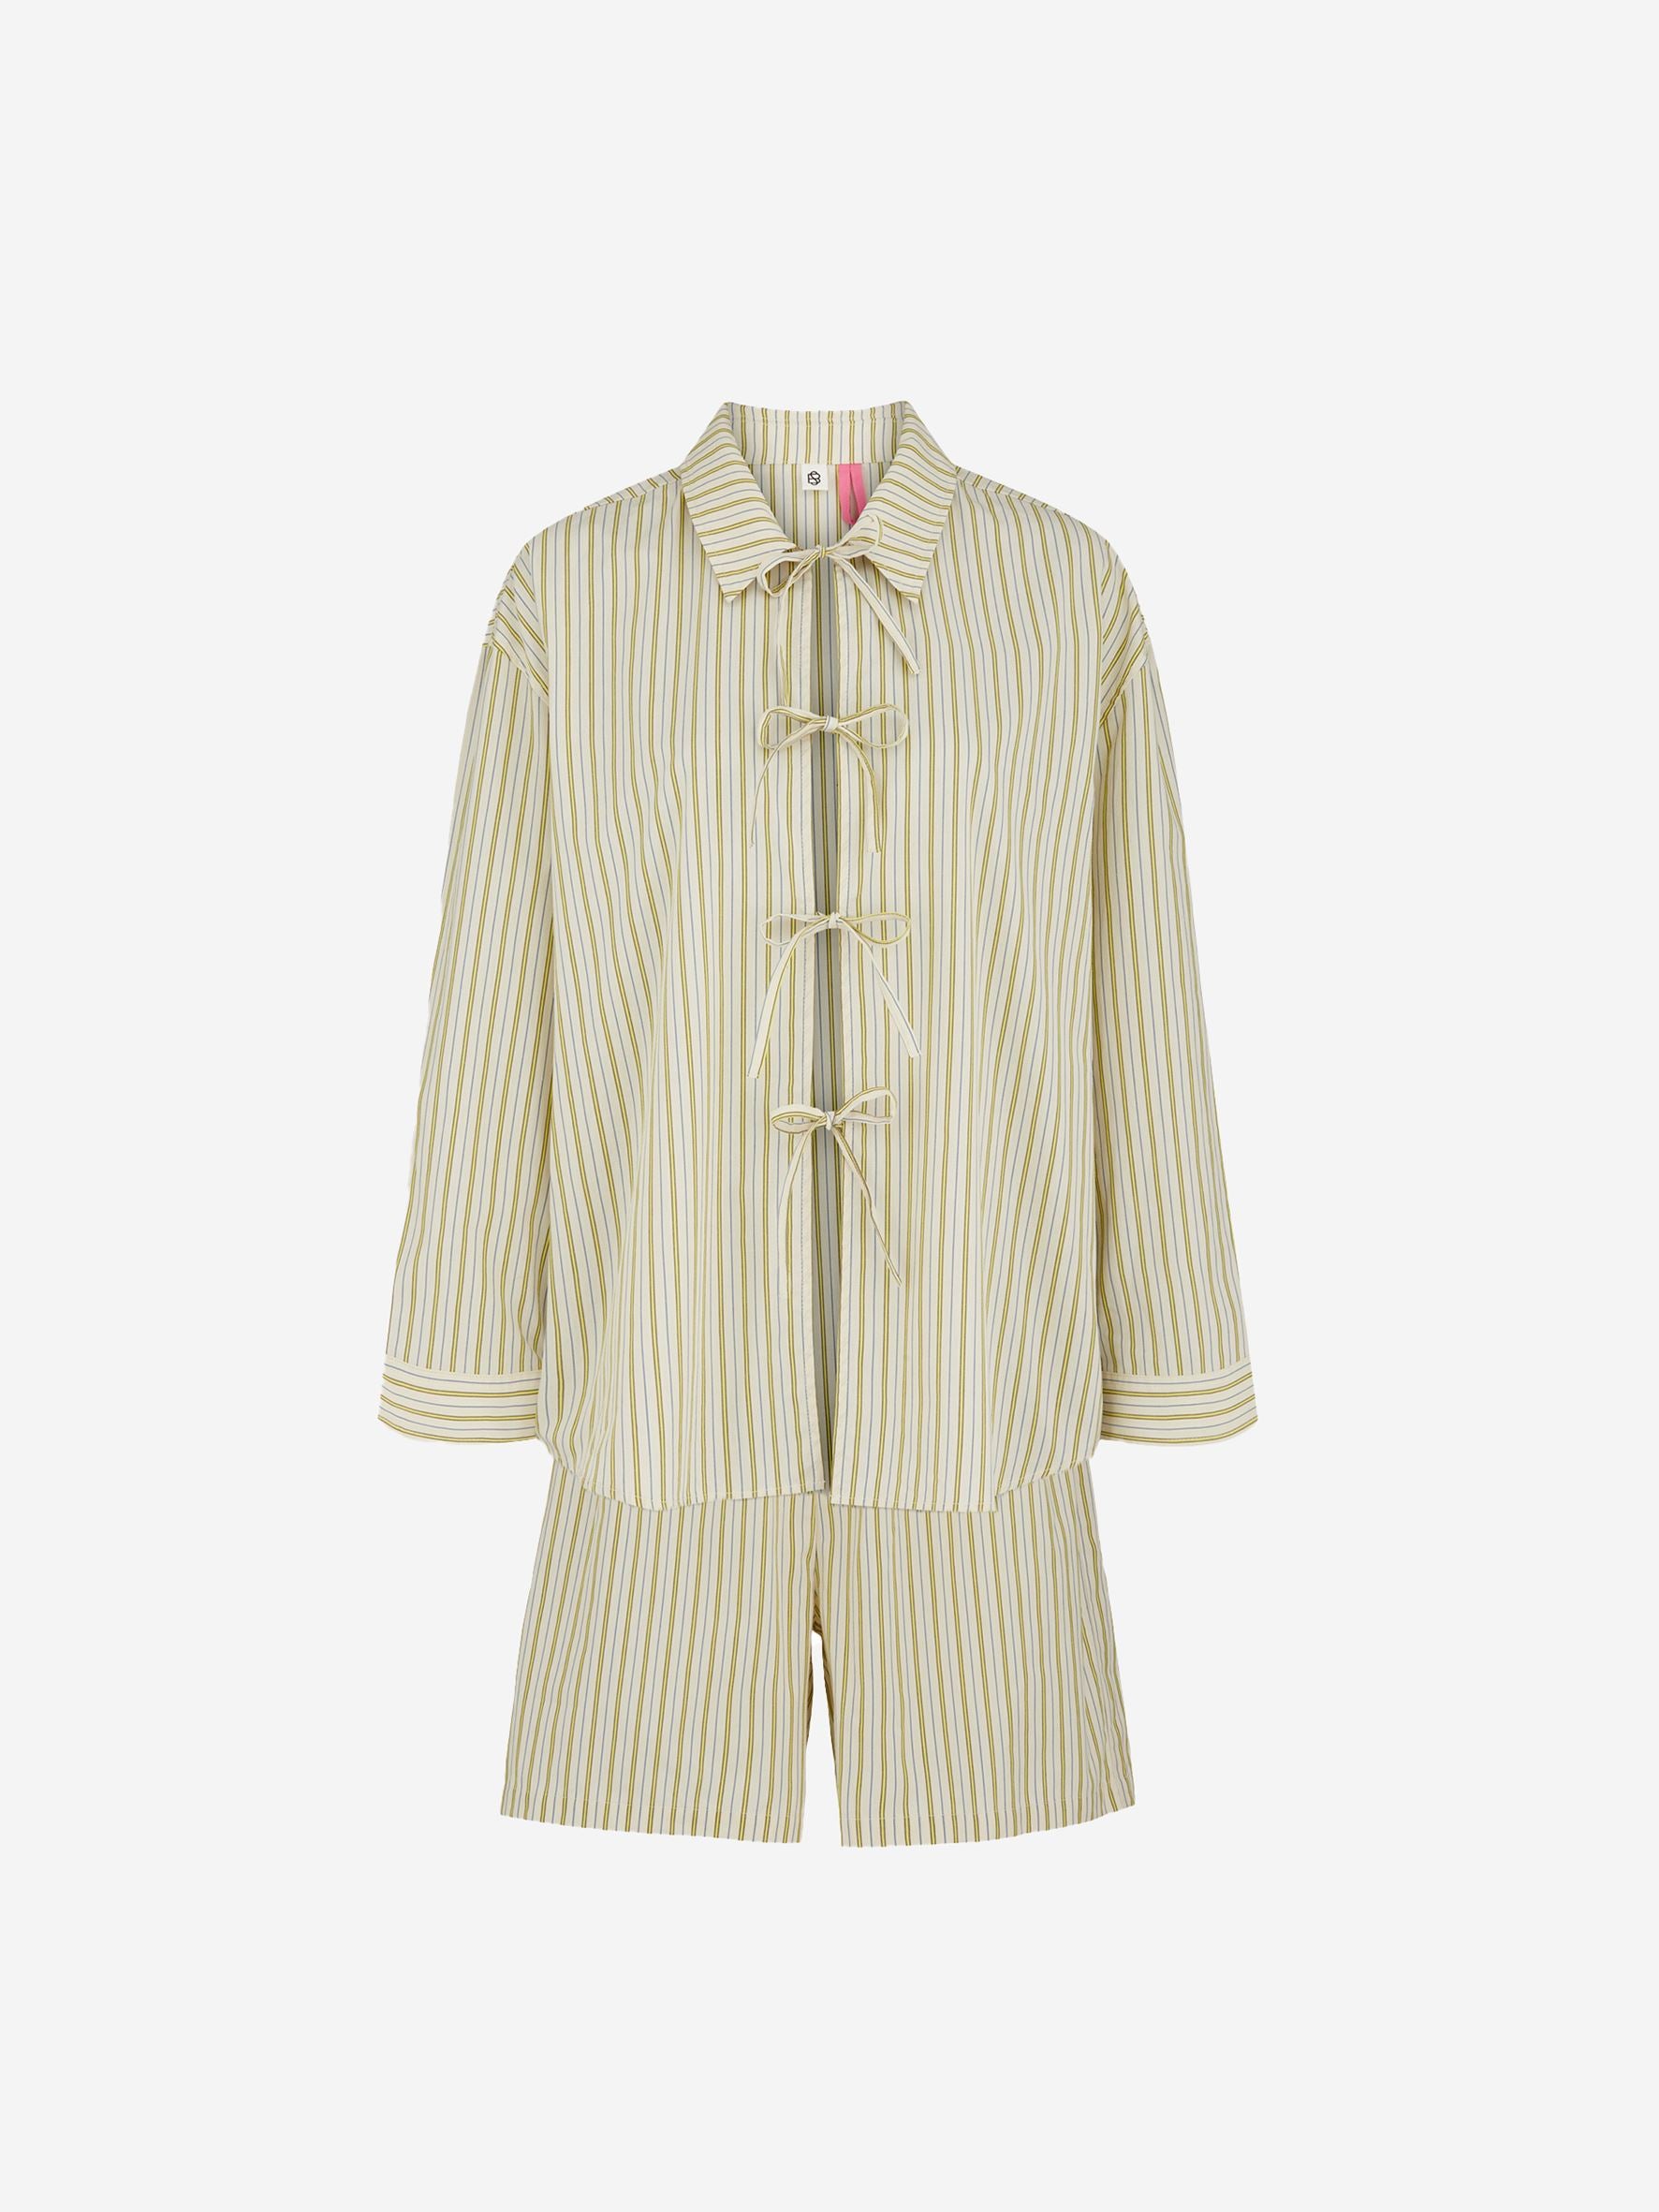 Becksöndergaard, Stripel Set Shirt+Shorts - Off-White/Green, homewear, homewear